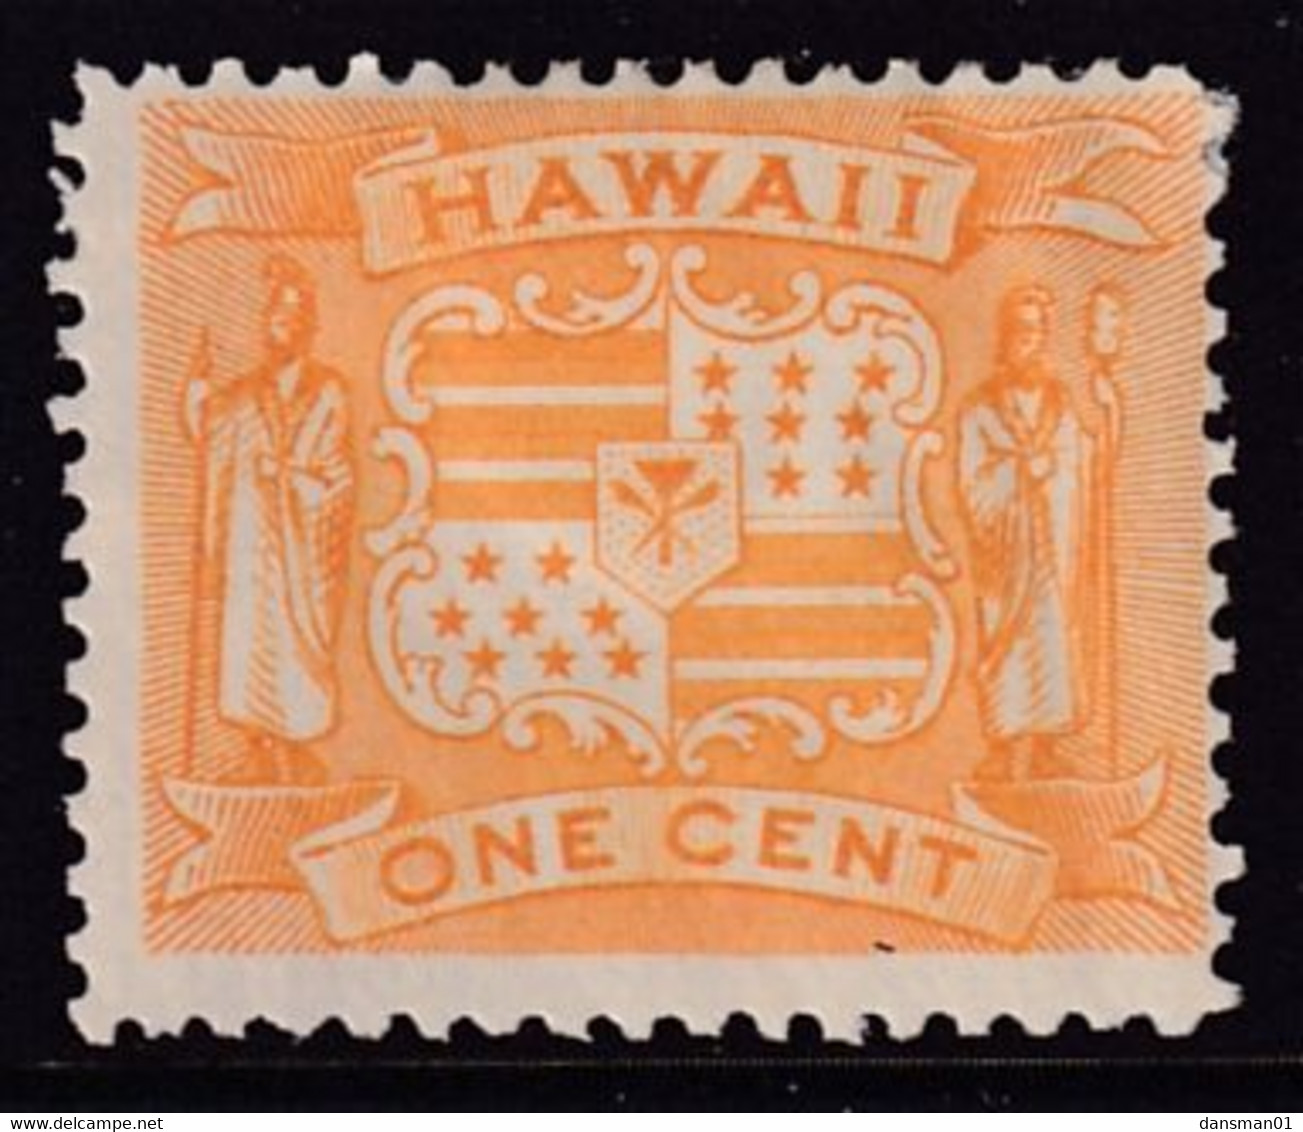 HAWAII 1894 Pictorial Sc 74 Mint Hinged - Hawaï